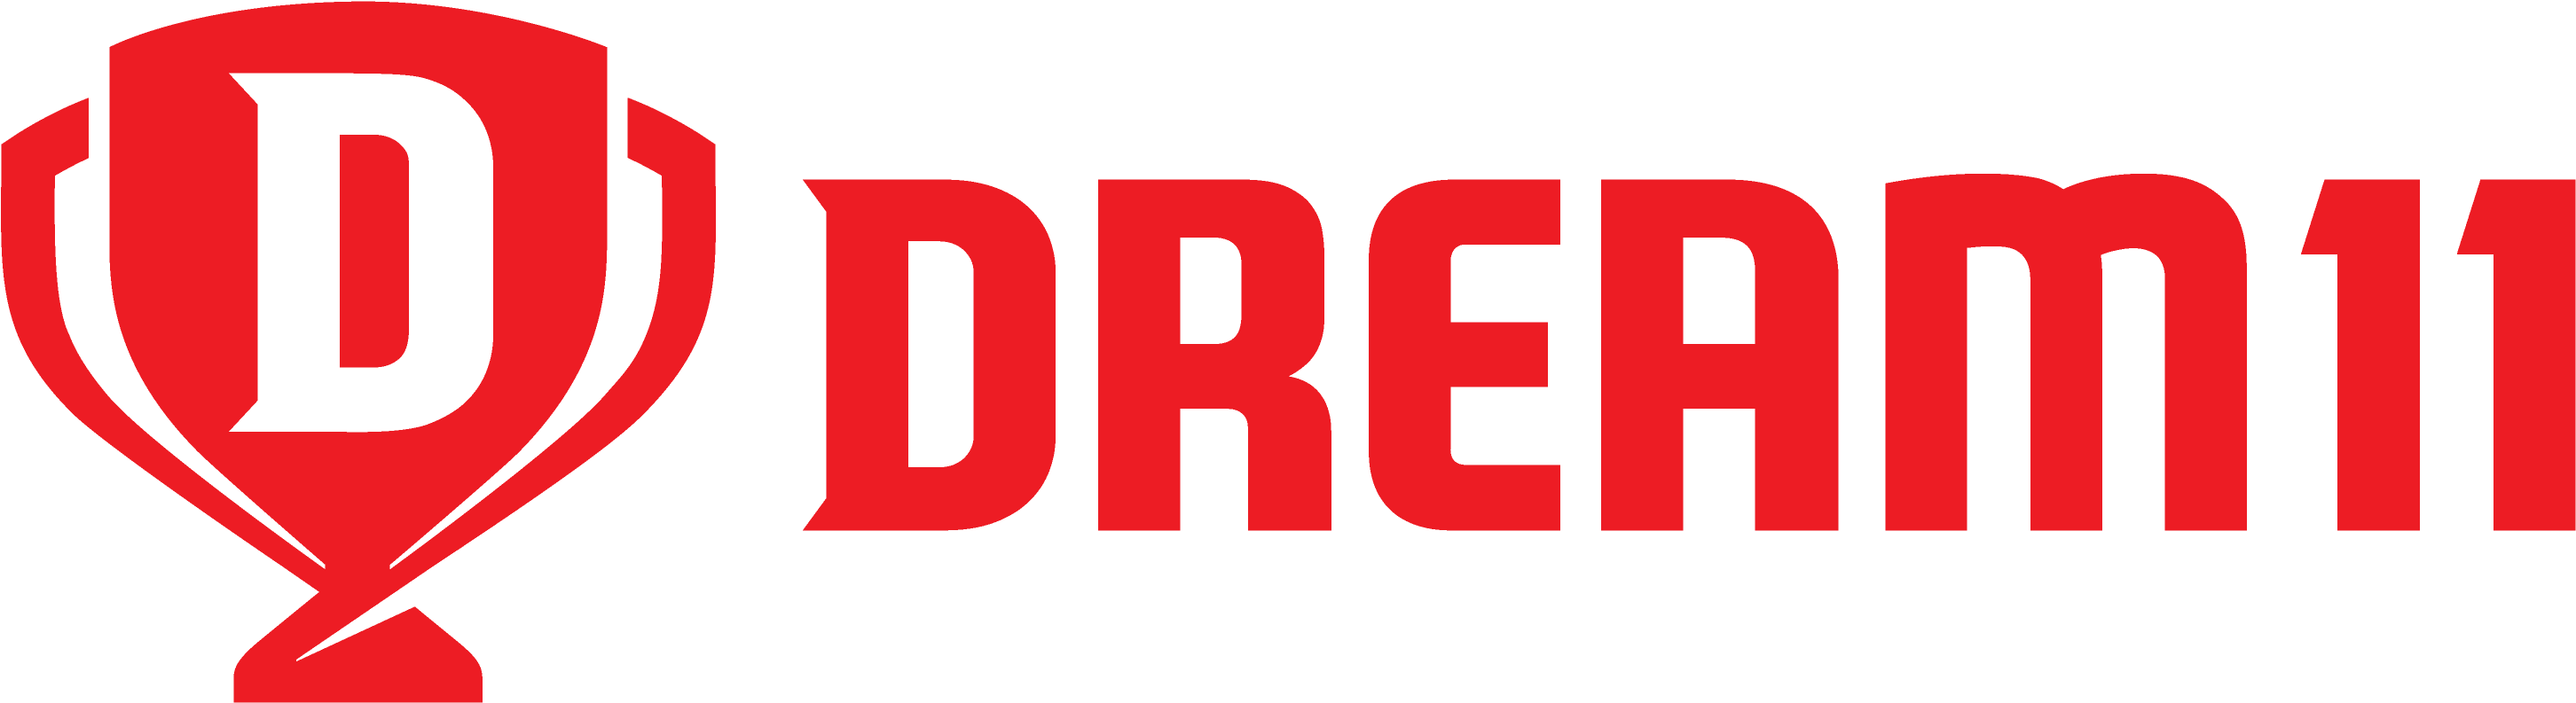 user-logo-1